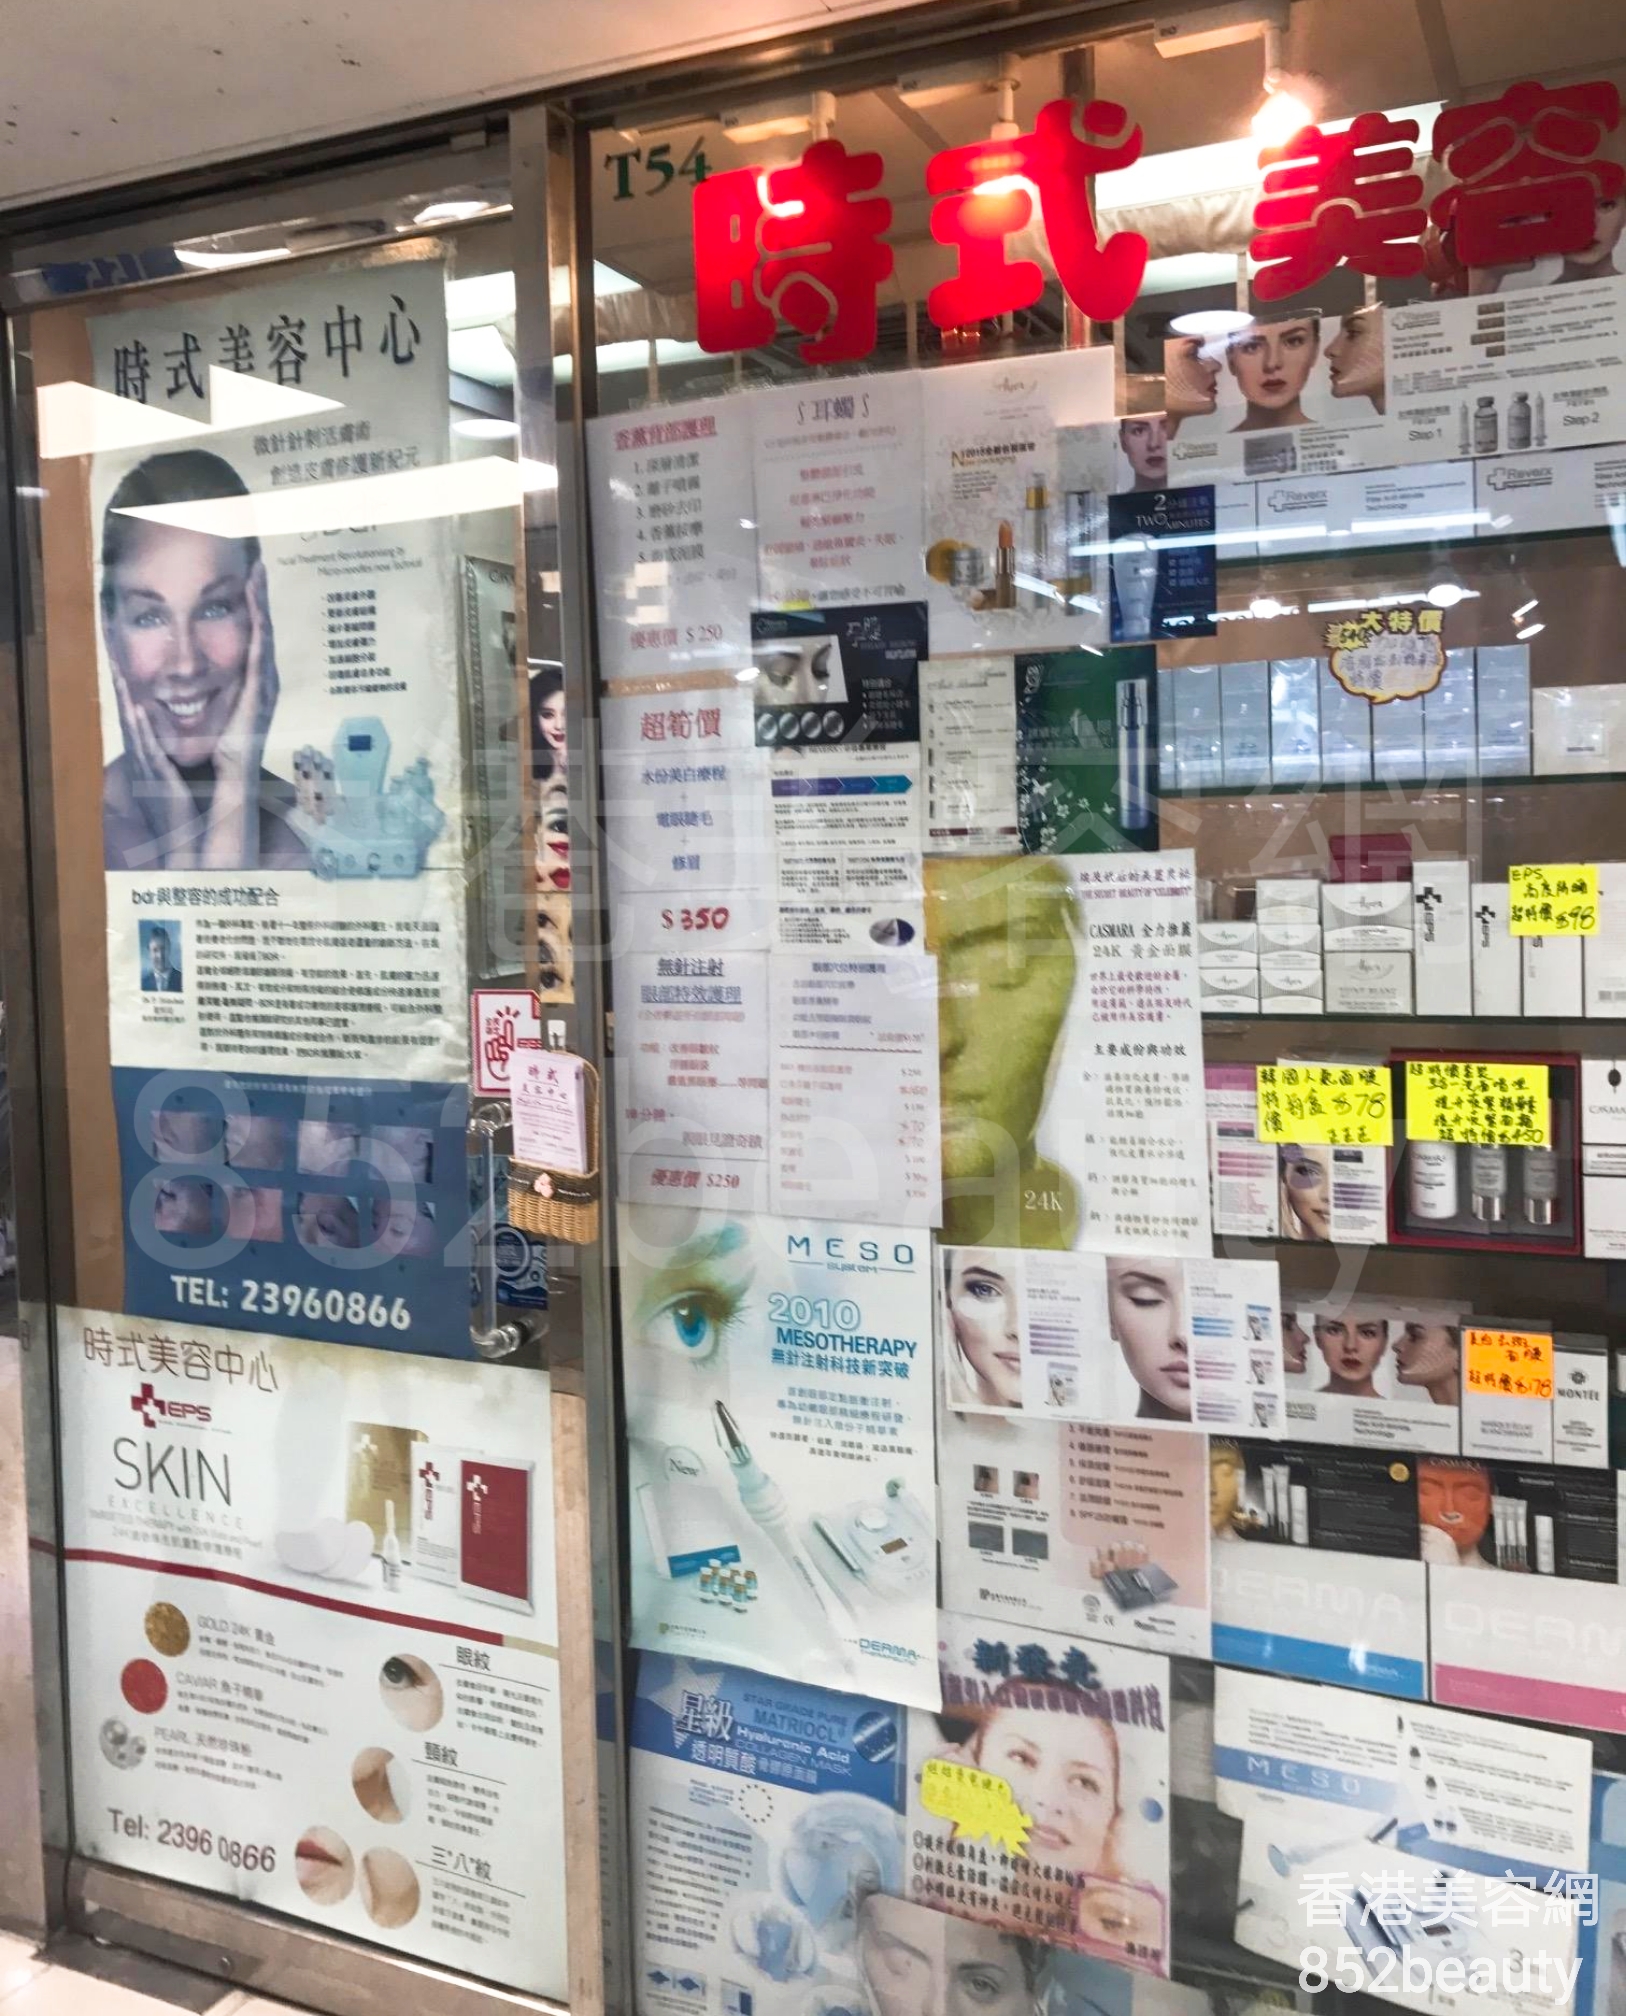 香港美容網 Hong Kong Beauty Salon 美容院 / 美容師: 時式美容中心